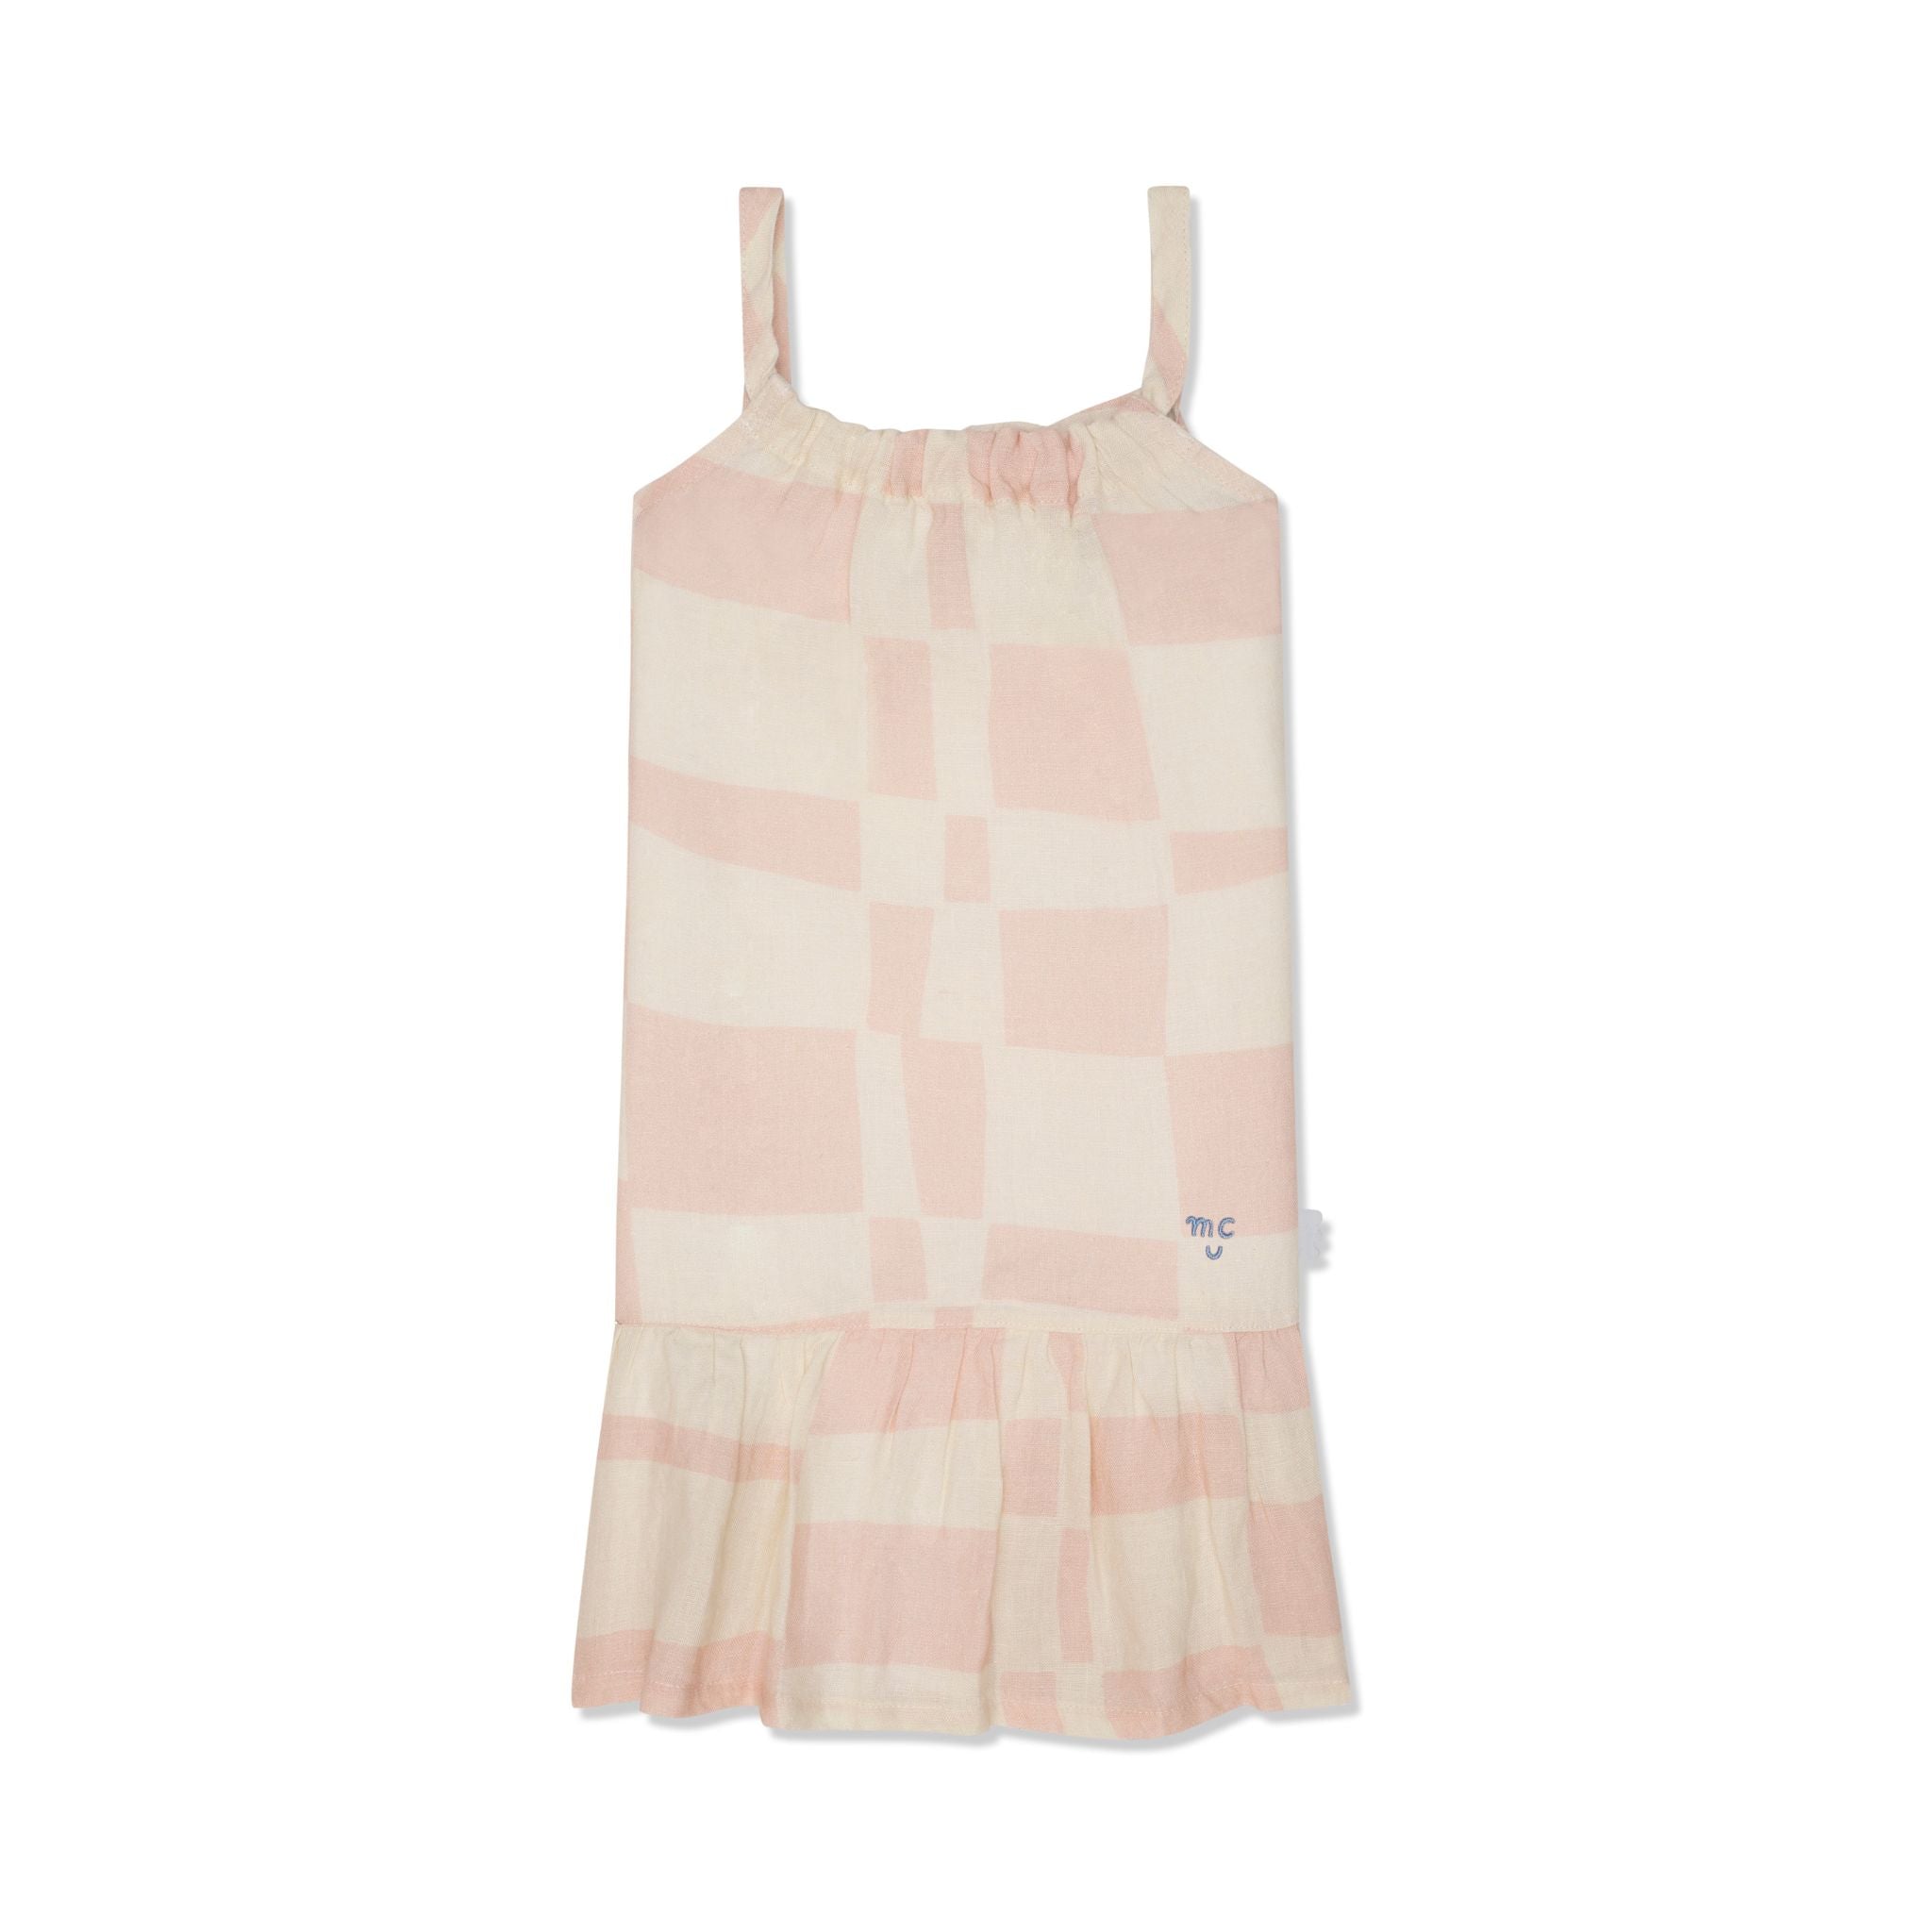 Checkered Linen Kid Dress